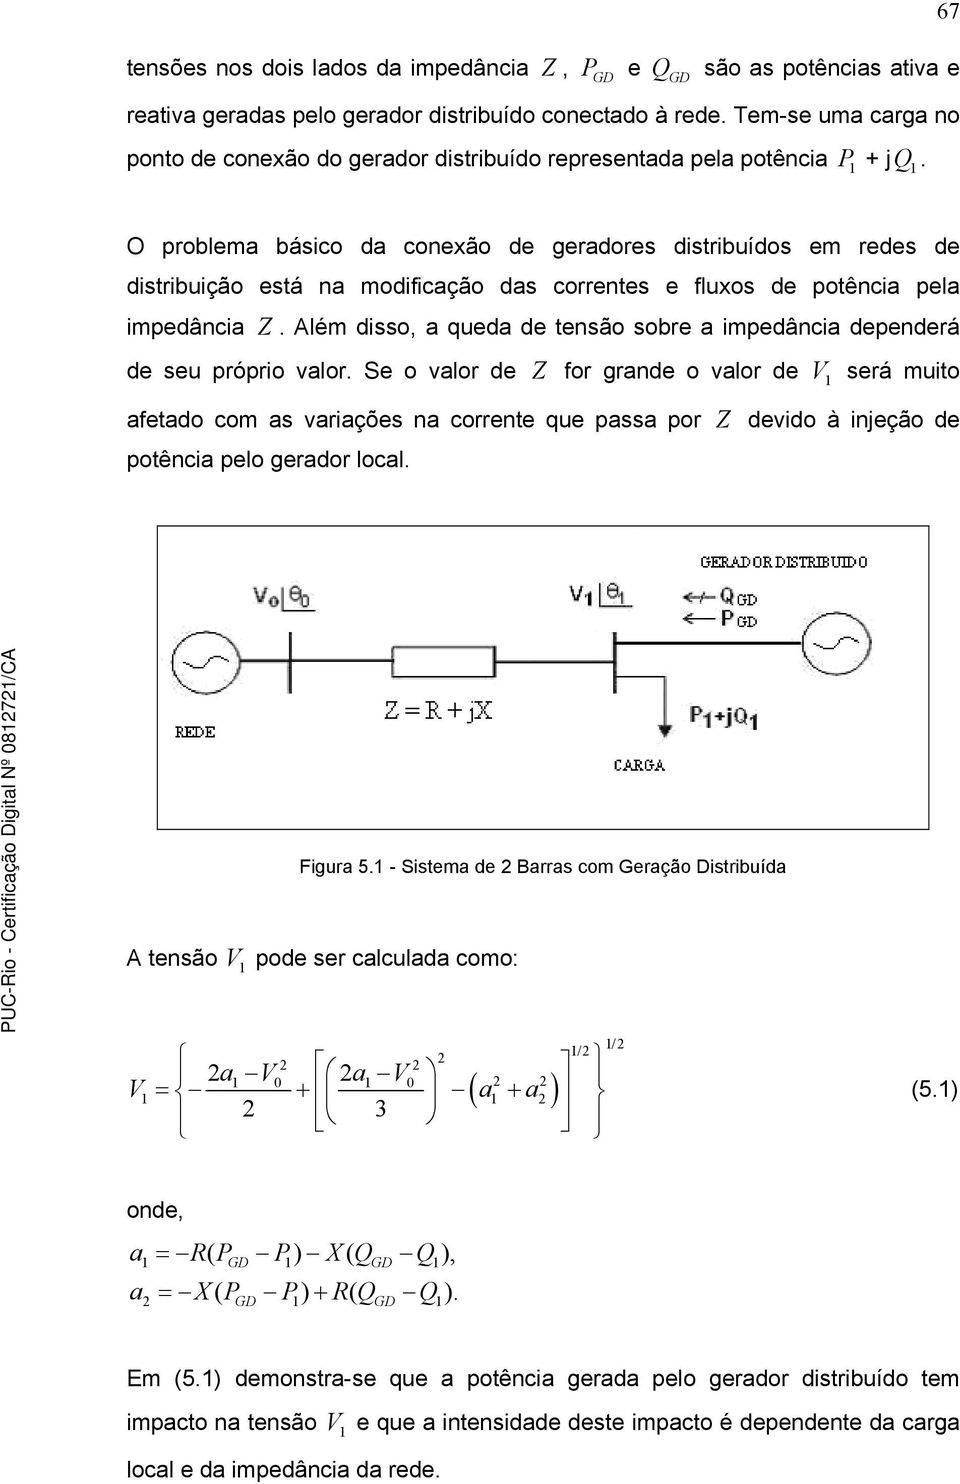 O problema básico da conexão de geradores distribuídos em redes de distribuição está na modificação das correntes e fluxos de potência pela impedância Z.